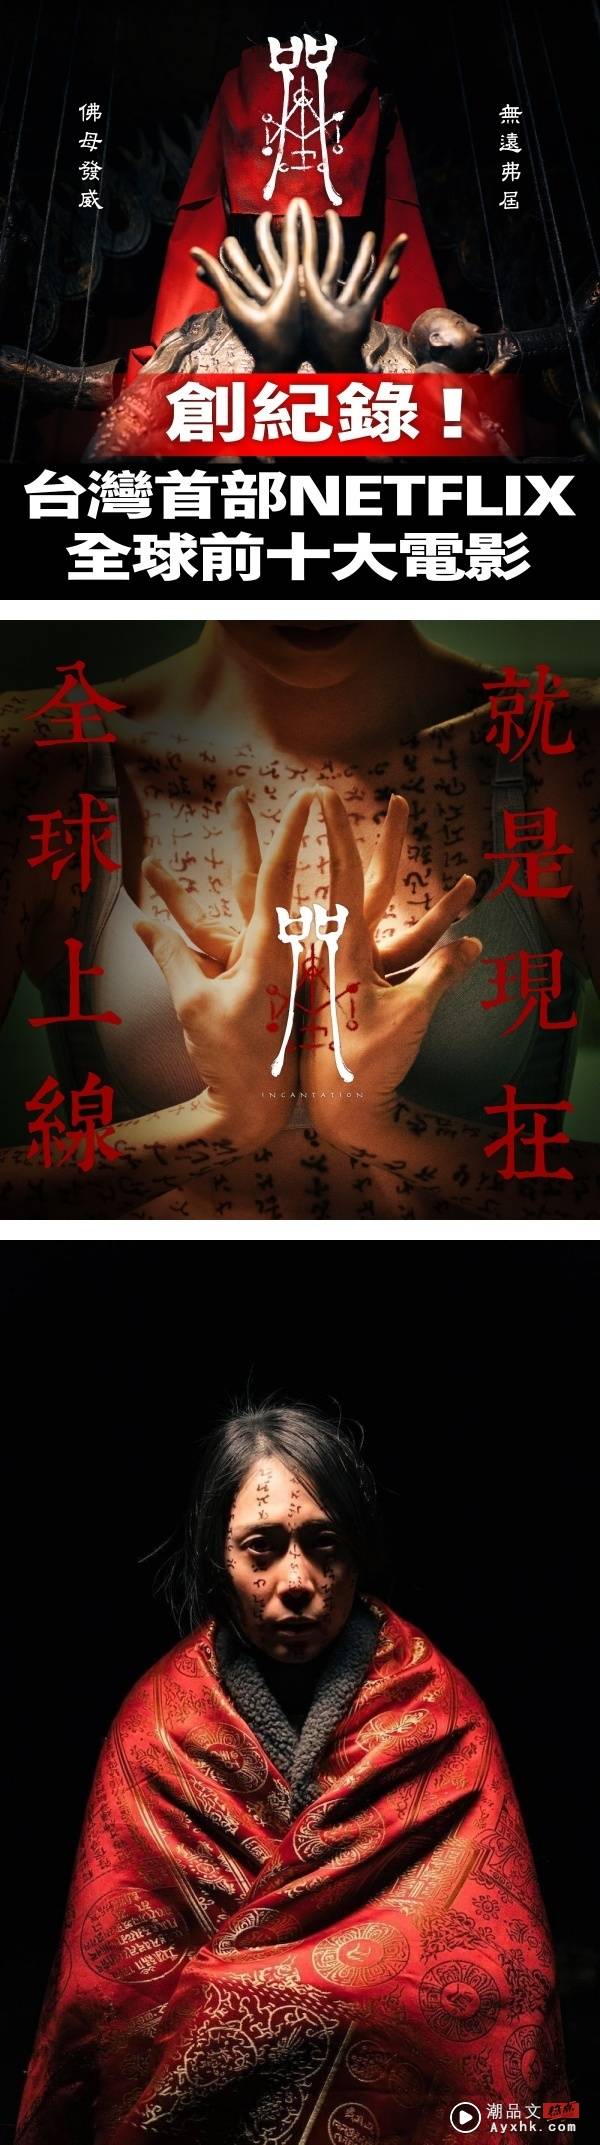 【影评】《咒》被誉为“中国台湾恐怖片天花板”！部分场景却令人出戏？ 娱乐资讯 图1张